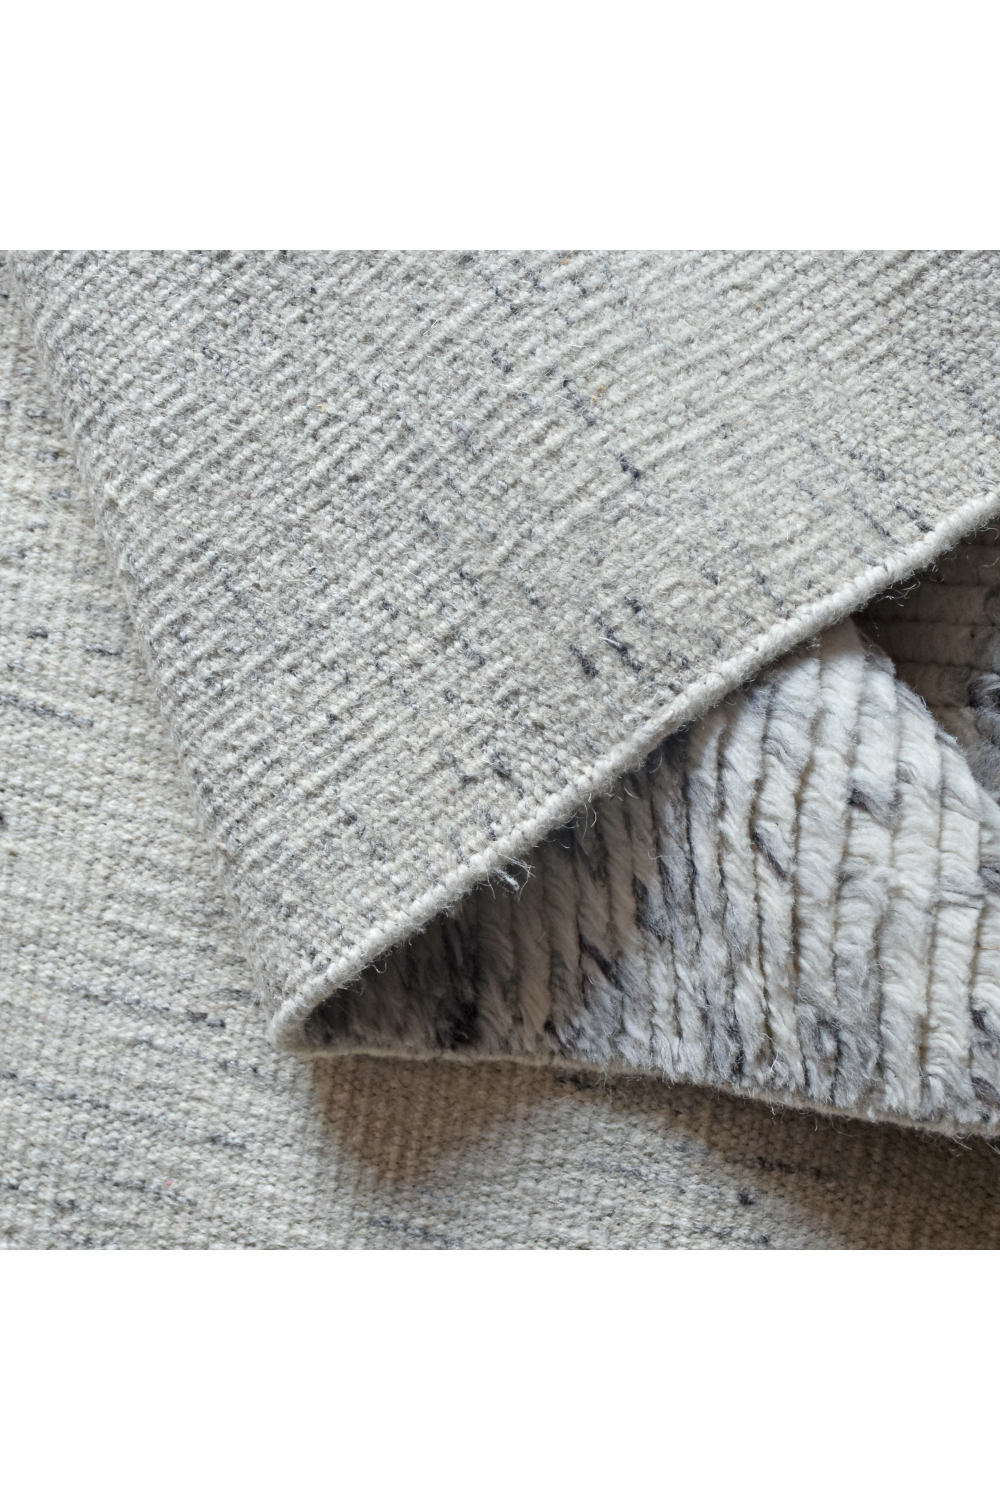 Textured Woven Rug | Andrew Martin Darla | OROA